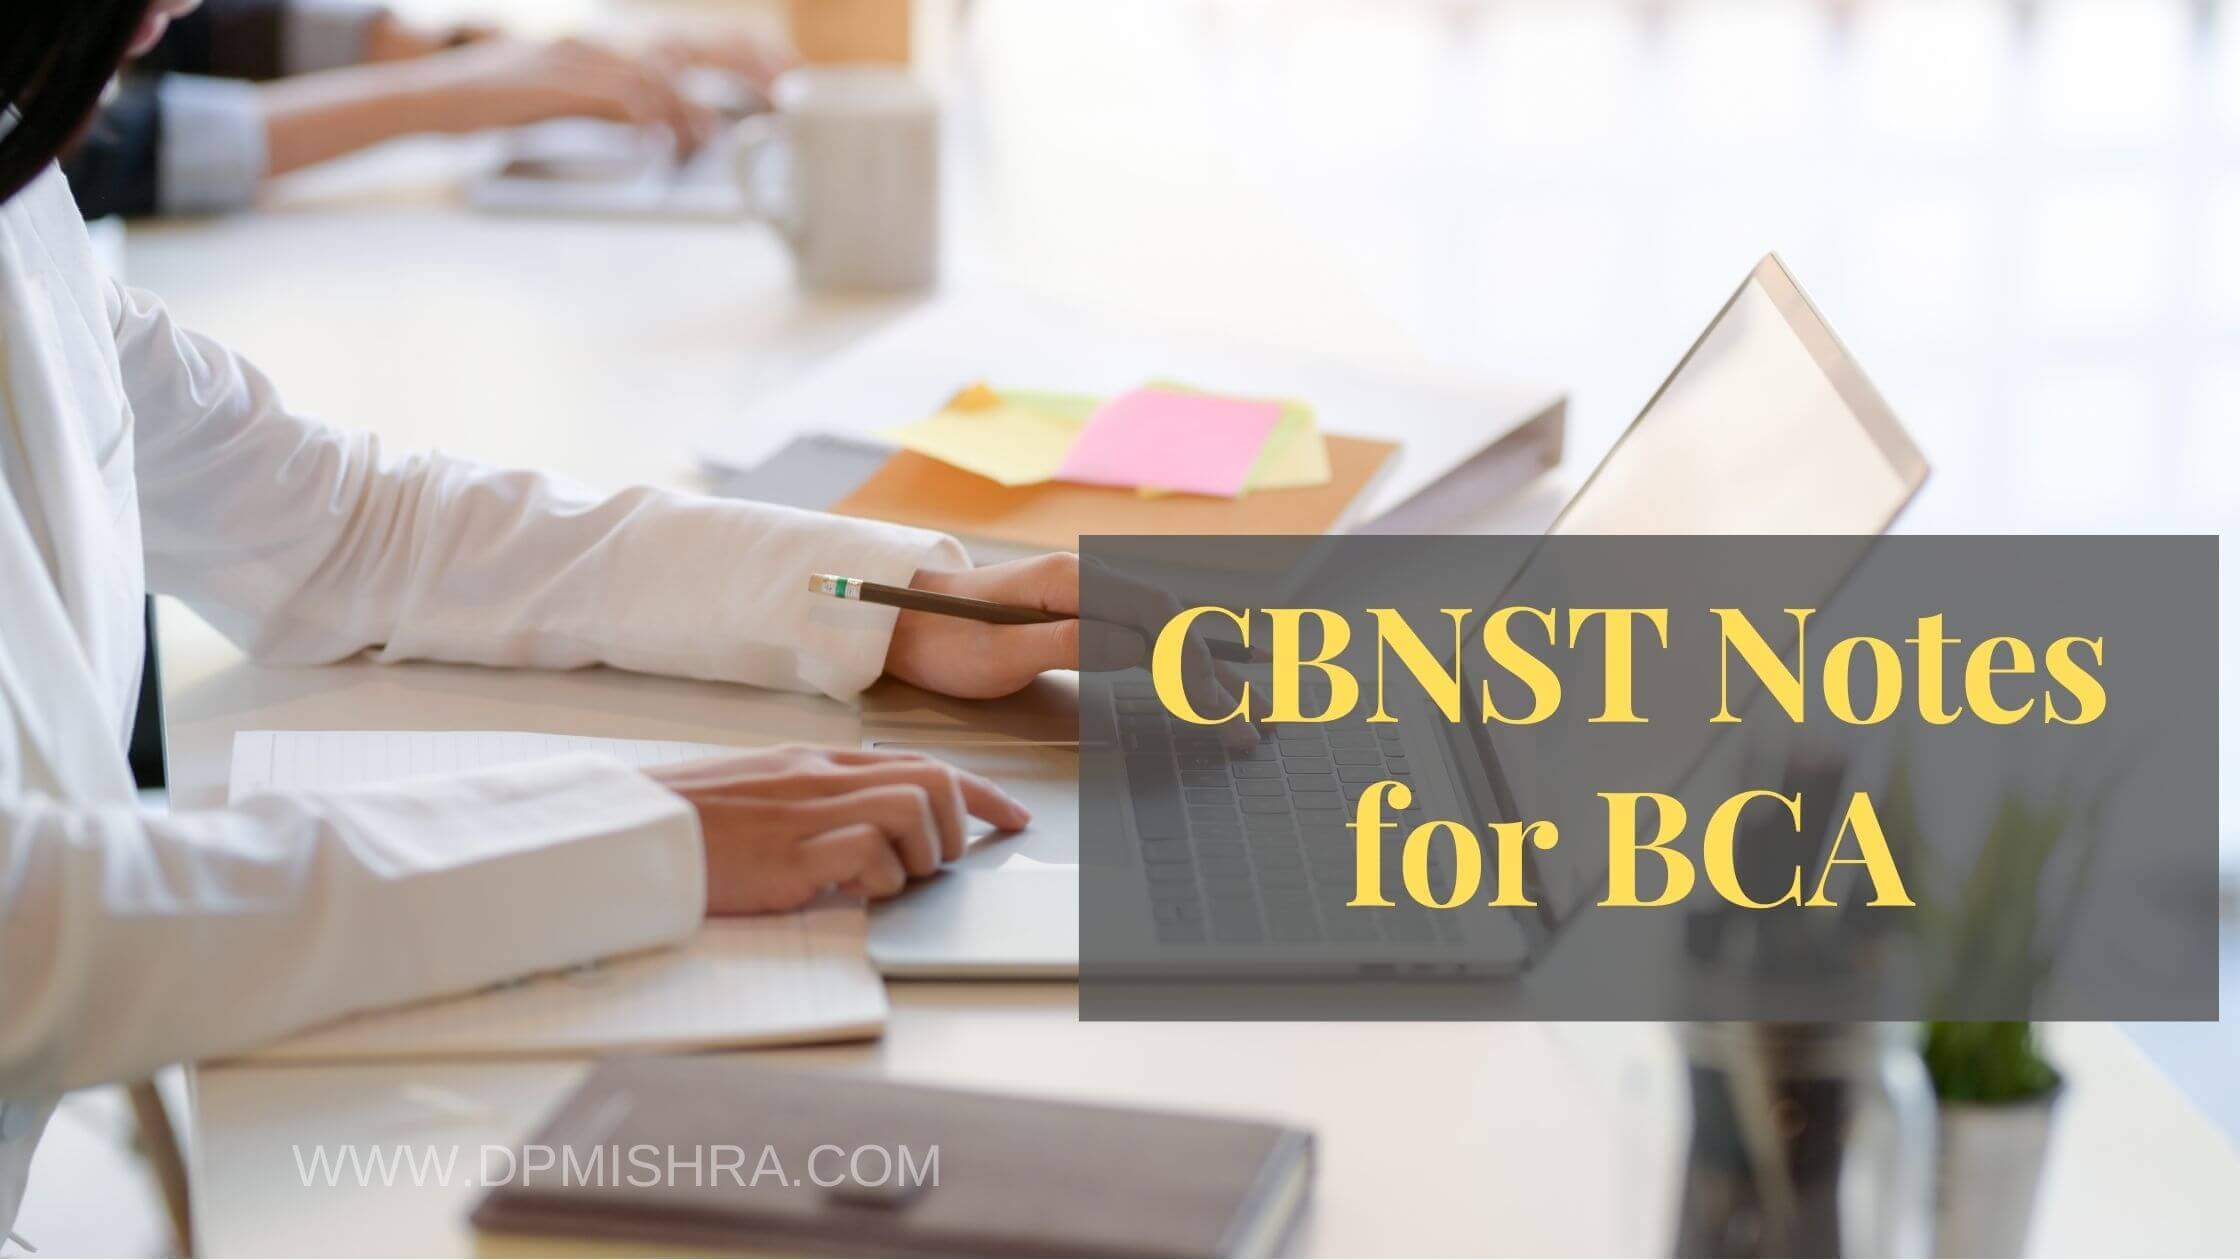 CBNST Notes for BCA